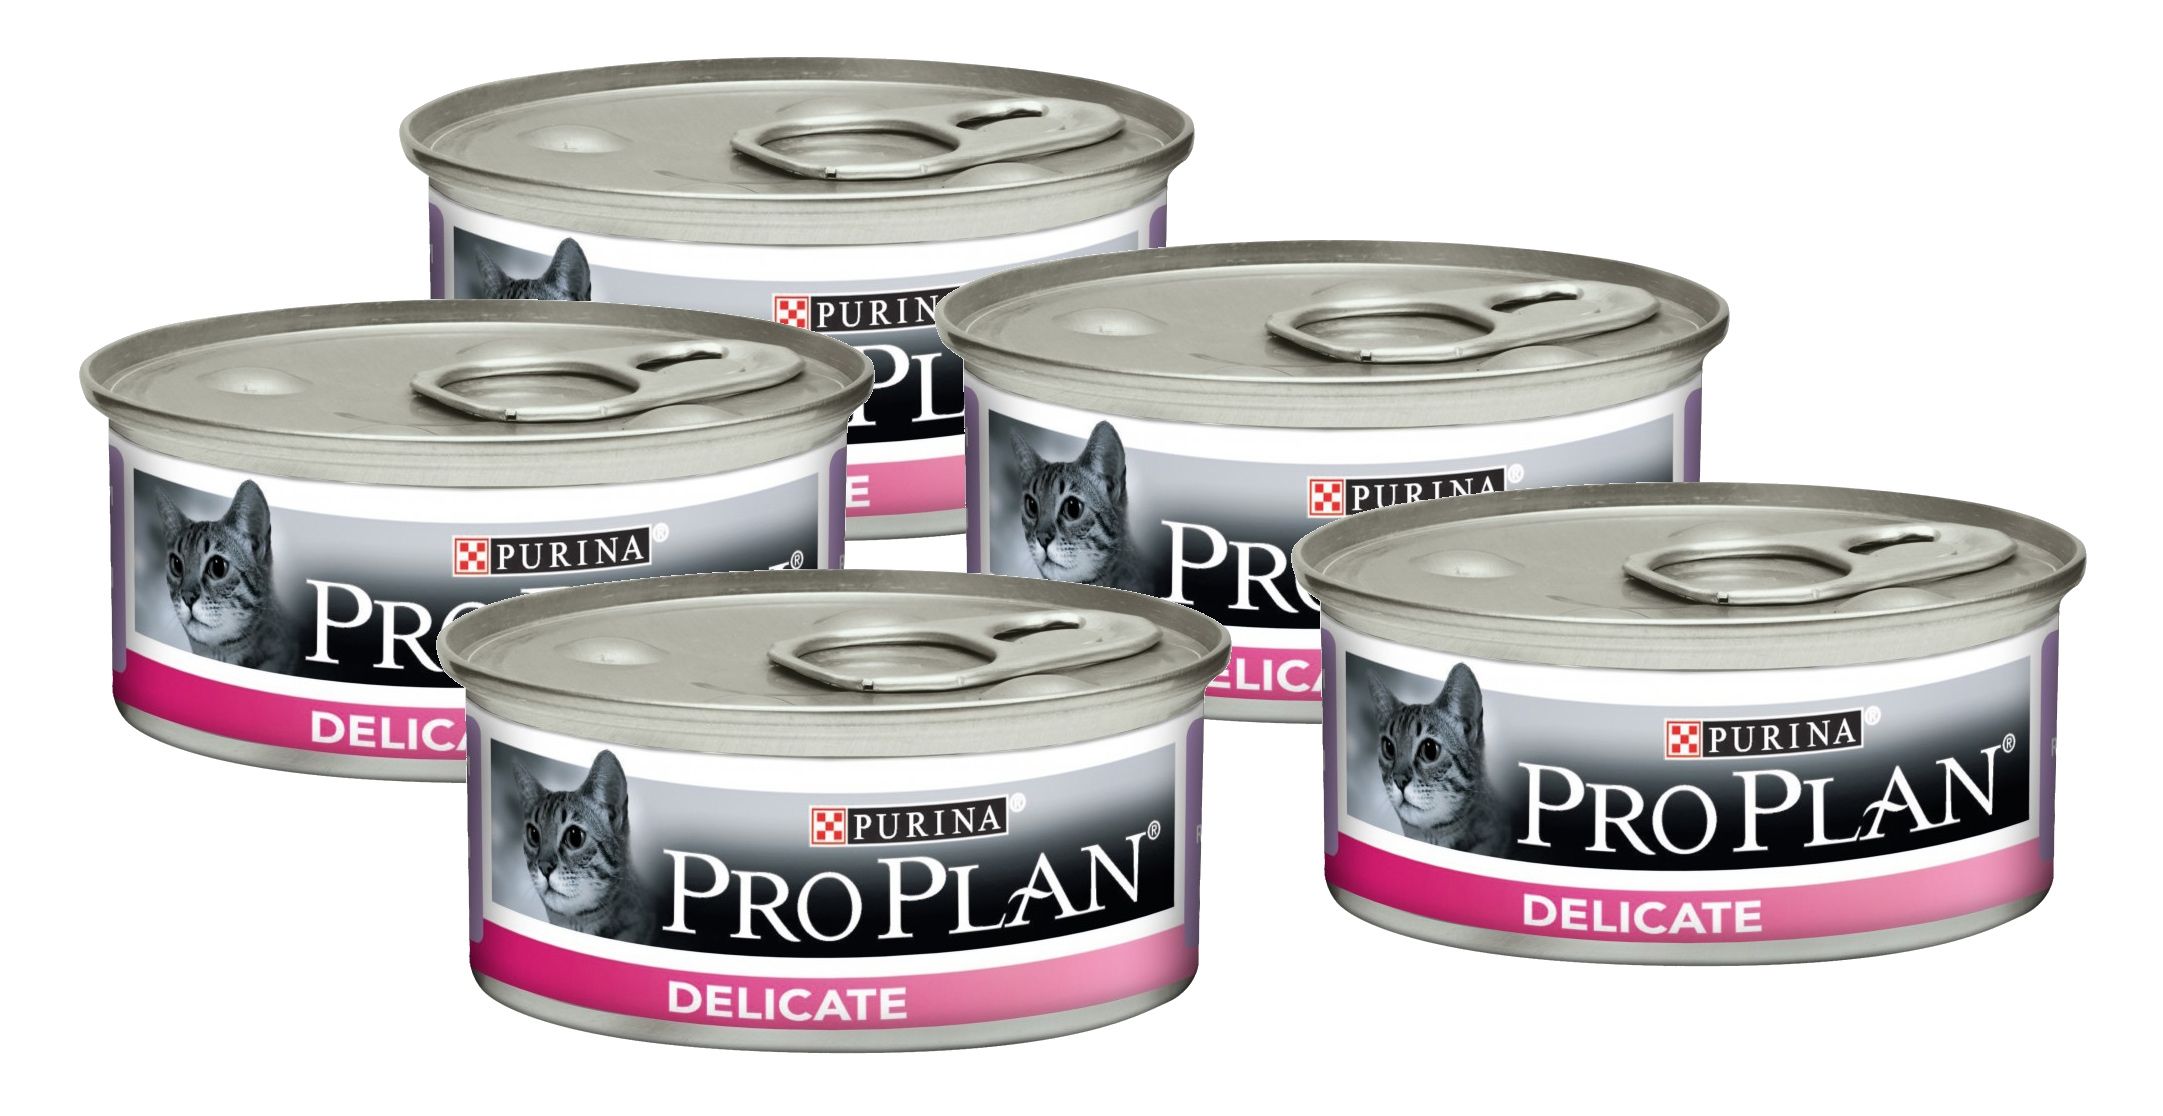 Купить корм проплан в москве. Pro Plan delicate для кошек консервы. Purina Pro Plan консервы для кошек. Консервы для кошек Pro Plan delicate, индейка, 85г. Пурина Деликат консервы с индейкой для кошек.